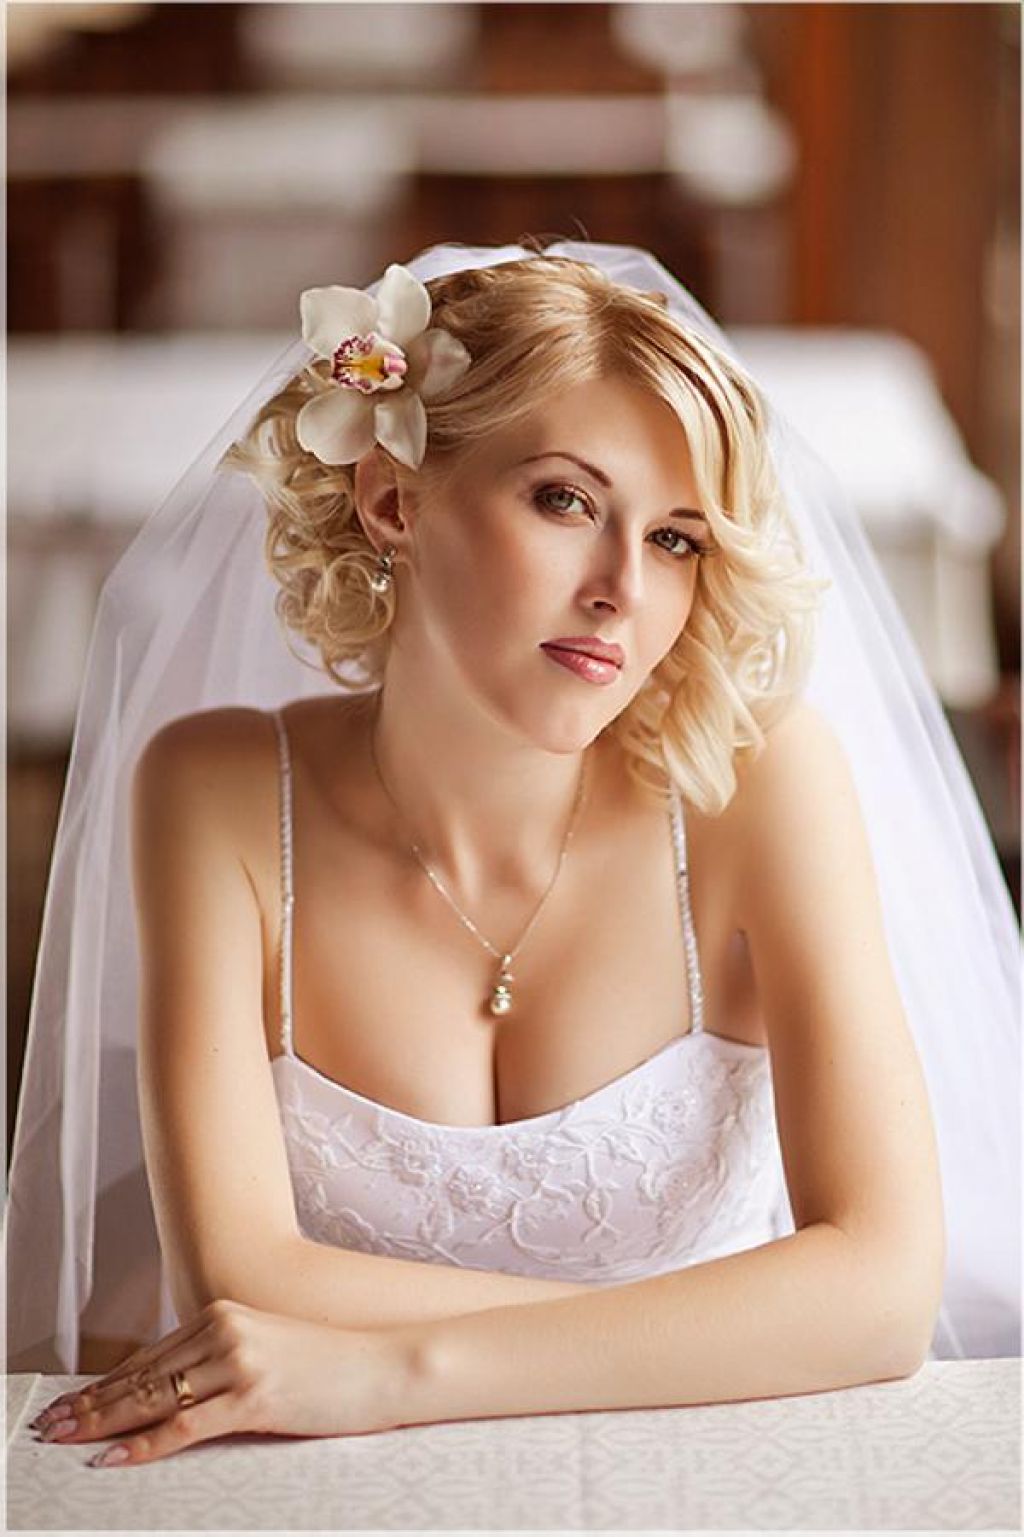 свадебная короткая причёска с фатой и с цветком сбоку в волосах.